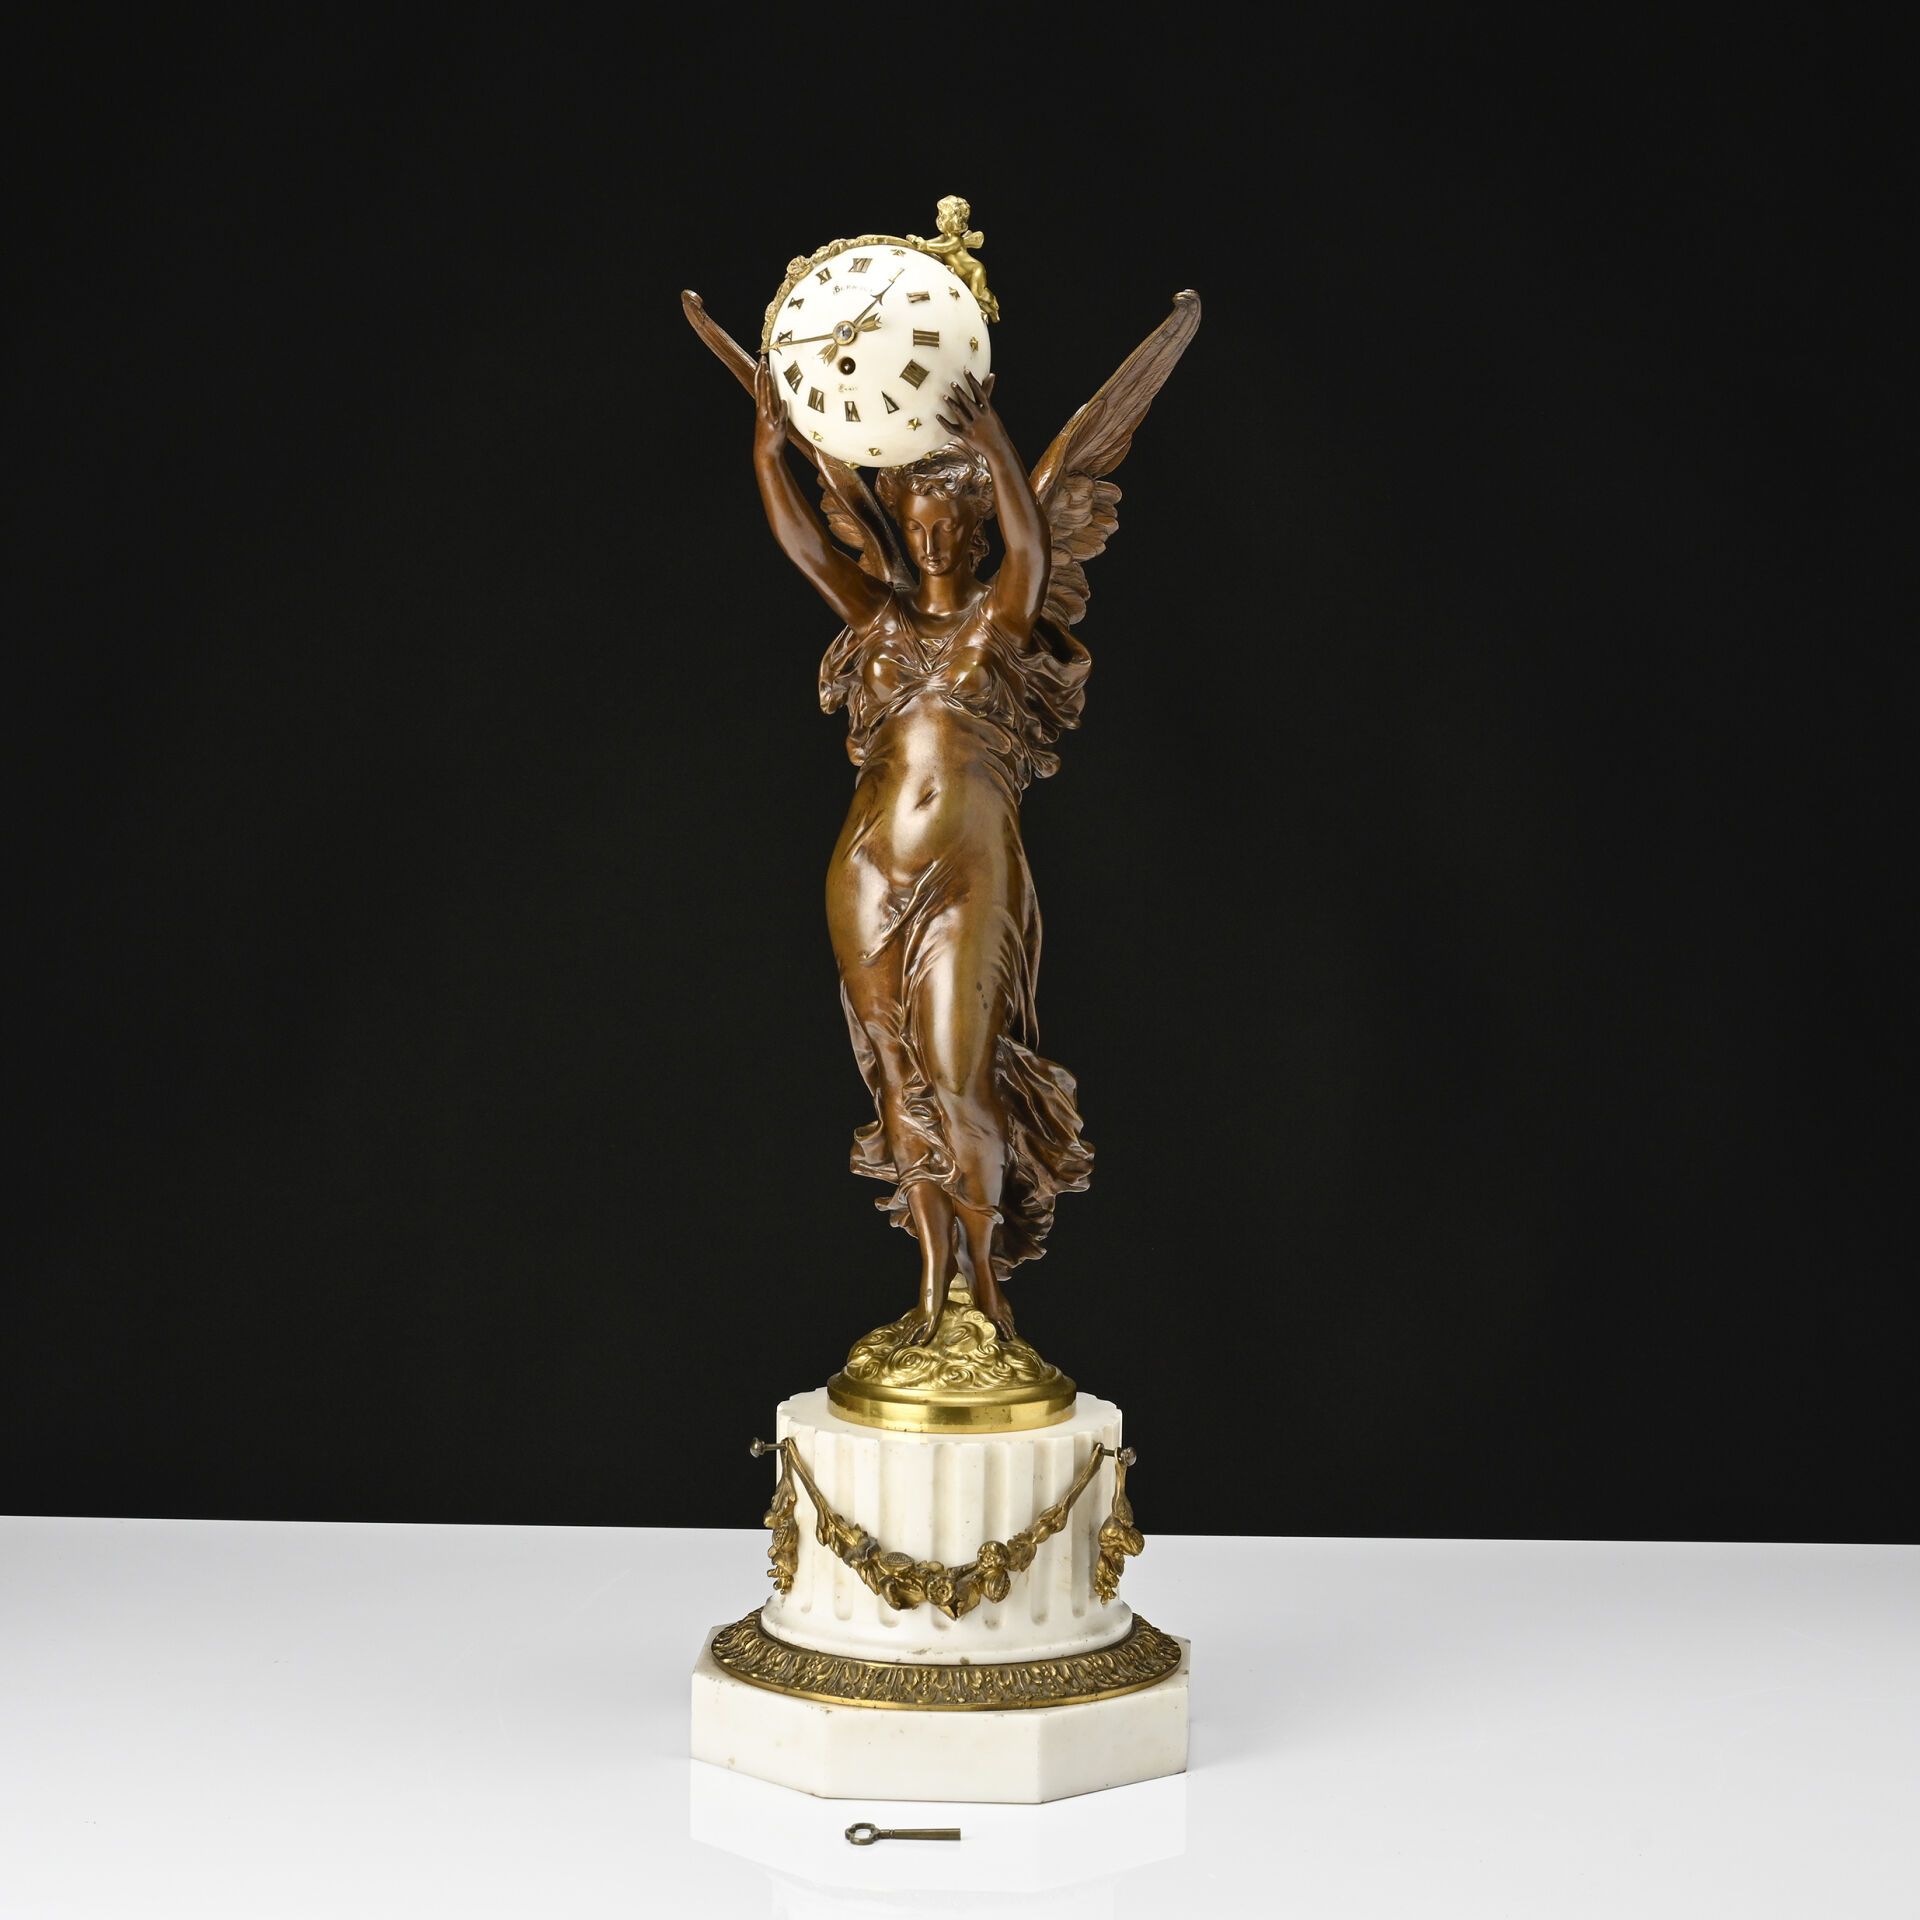 Null 取材于阿尔伯特-欧内斯特-卡里尔-贝尔路斯（1824-1887 年）
由青铜胜利女神托起的球形时钟
刻有巴黎 BERNOUX 字样的表盘 
大理石底座&hellip;